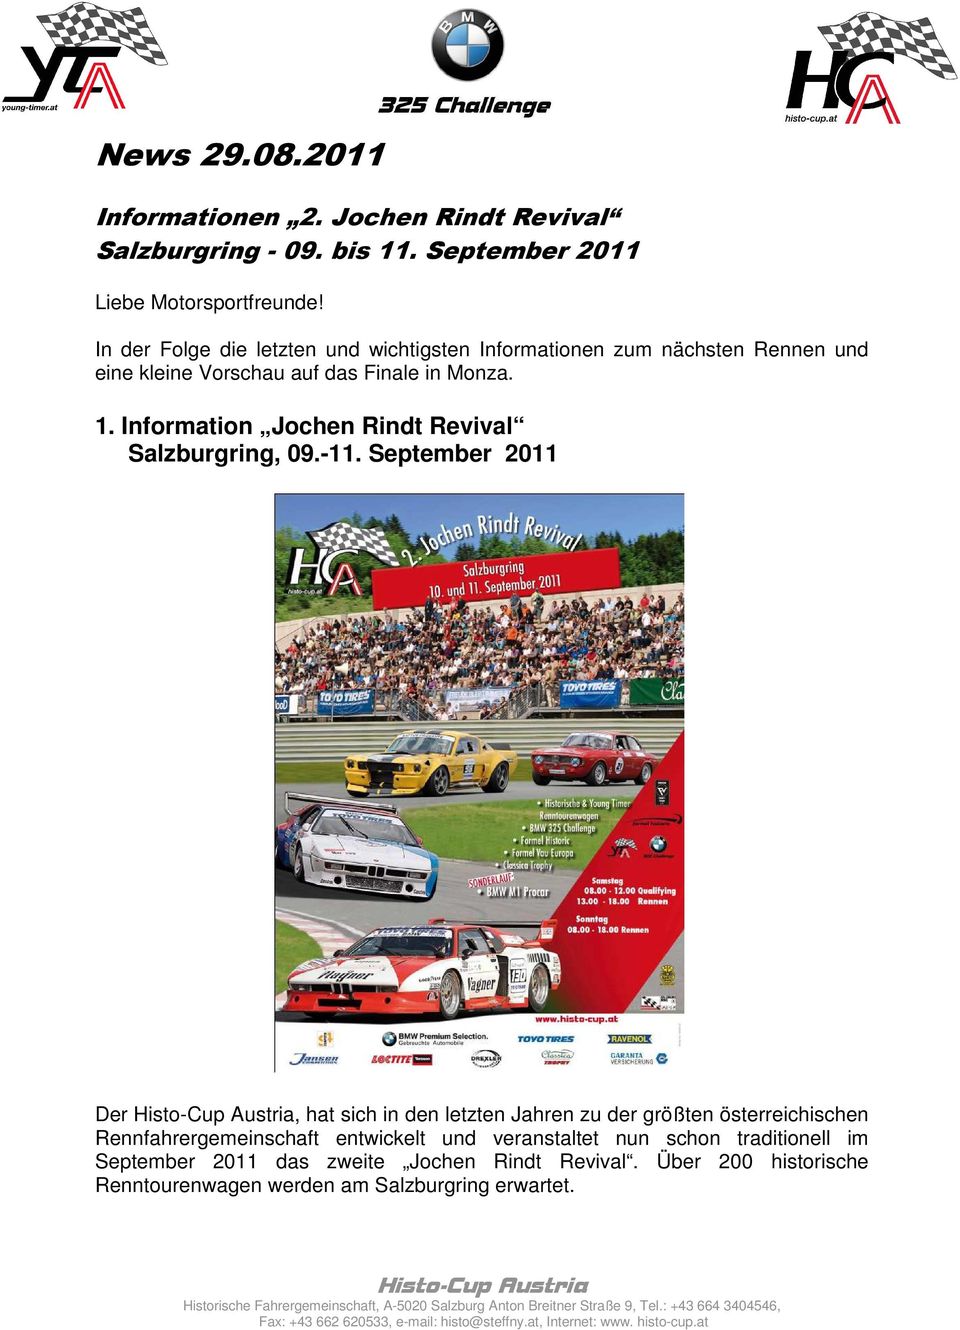 September 2011 Der Histo-Cup Austria, hat sich in den letzten Jahren zu der größten österreichischen Rennfahrergemeinschaft entwickelt und veranstaltet nun schon traditionell im September 2011 das